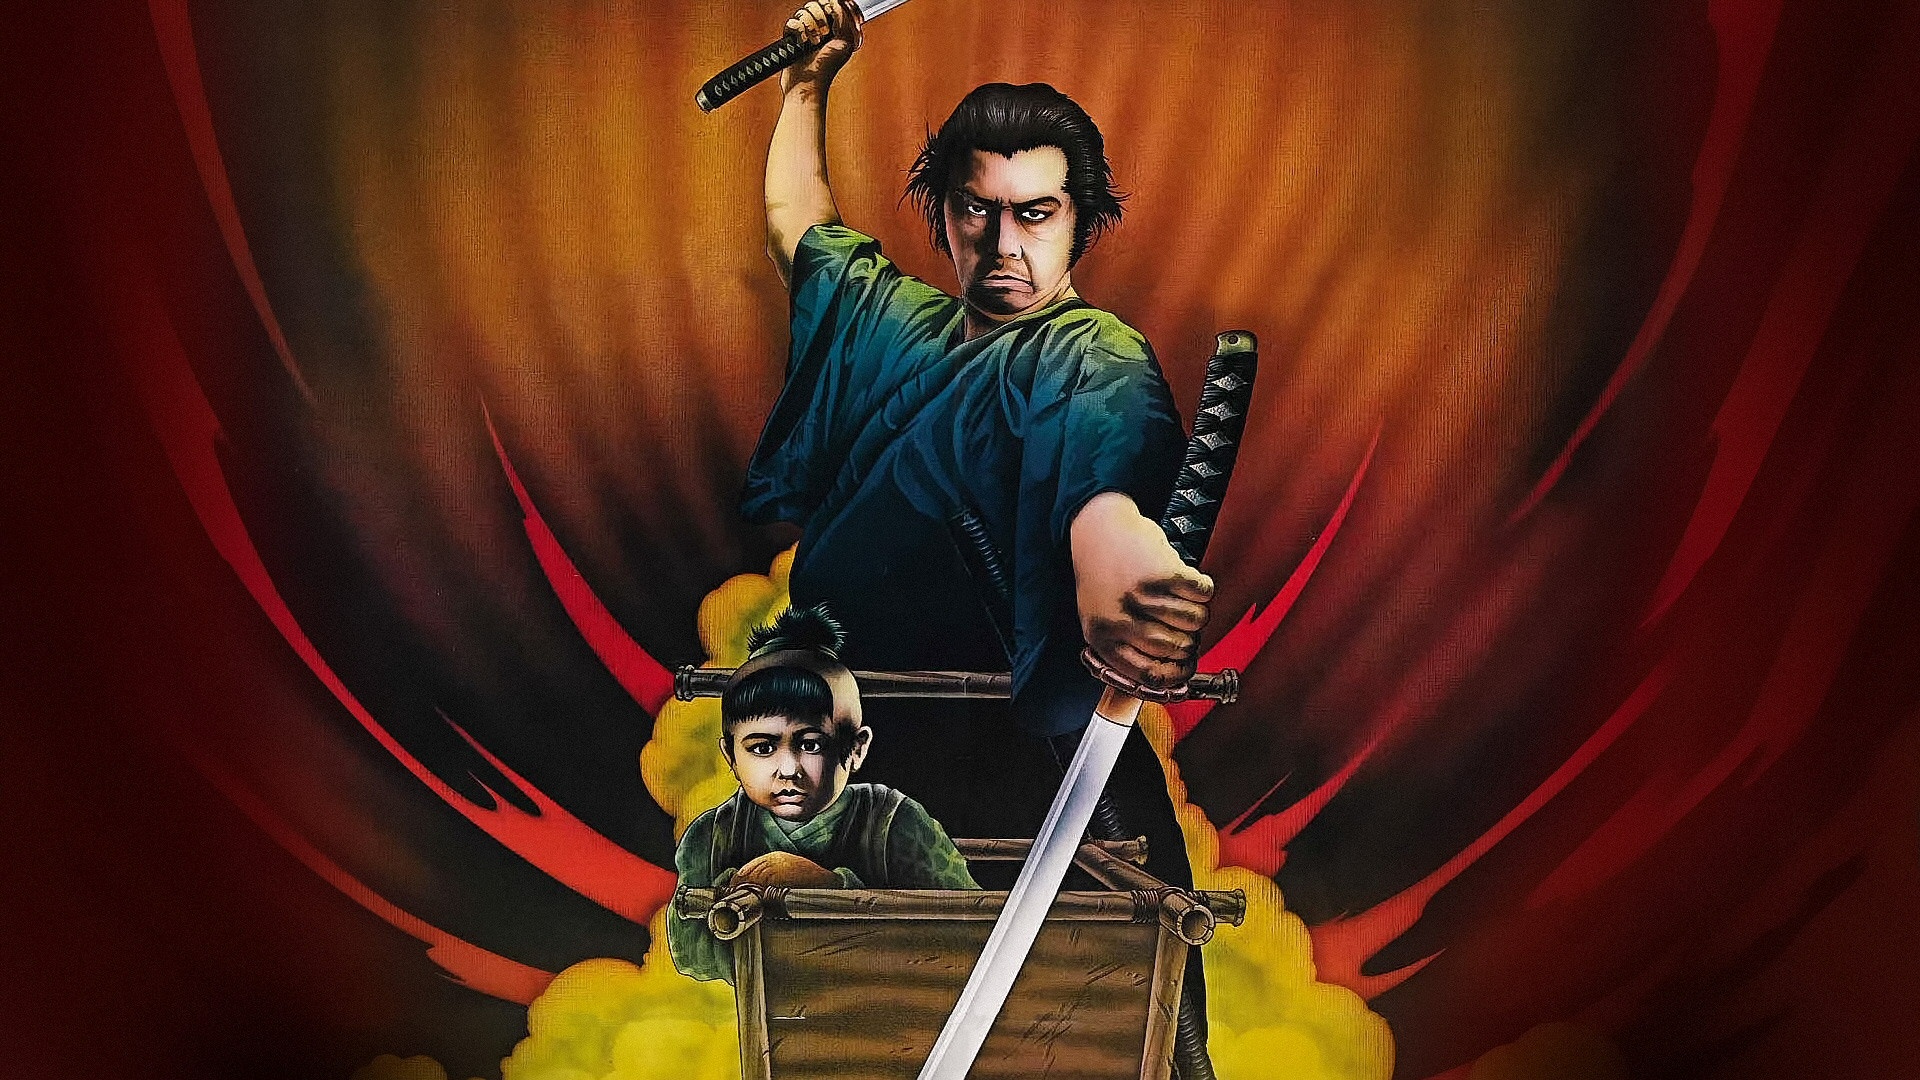 Shogun Assassin Wallpaper Movie Poster